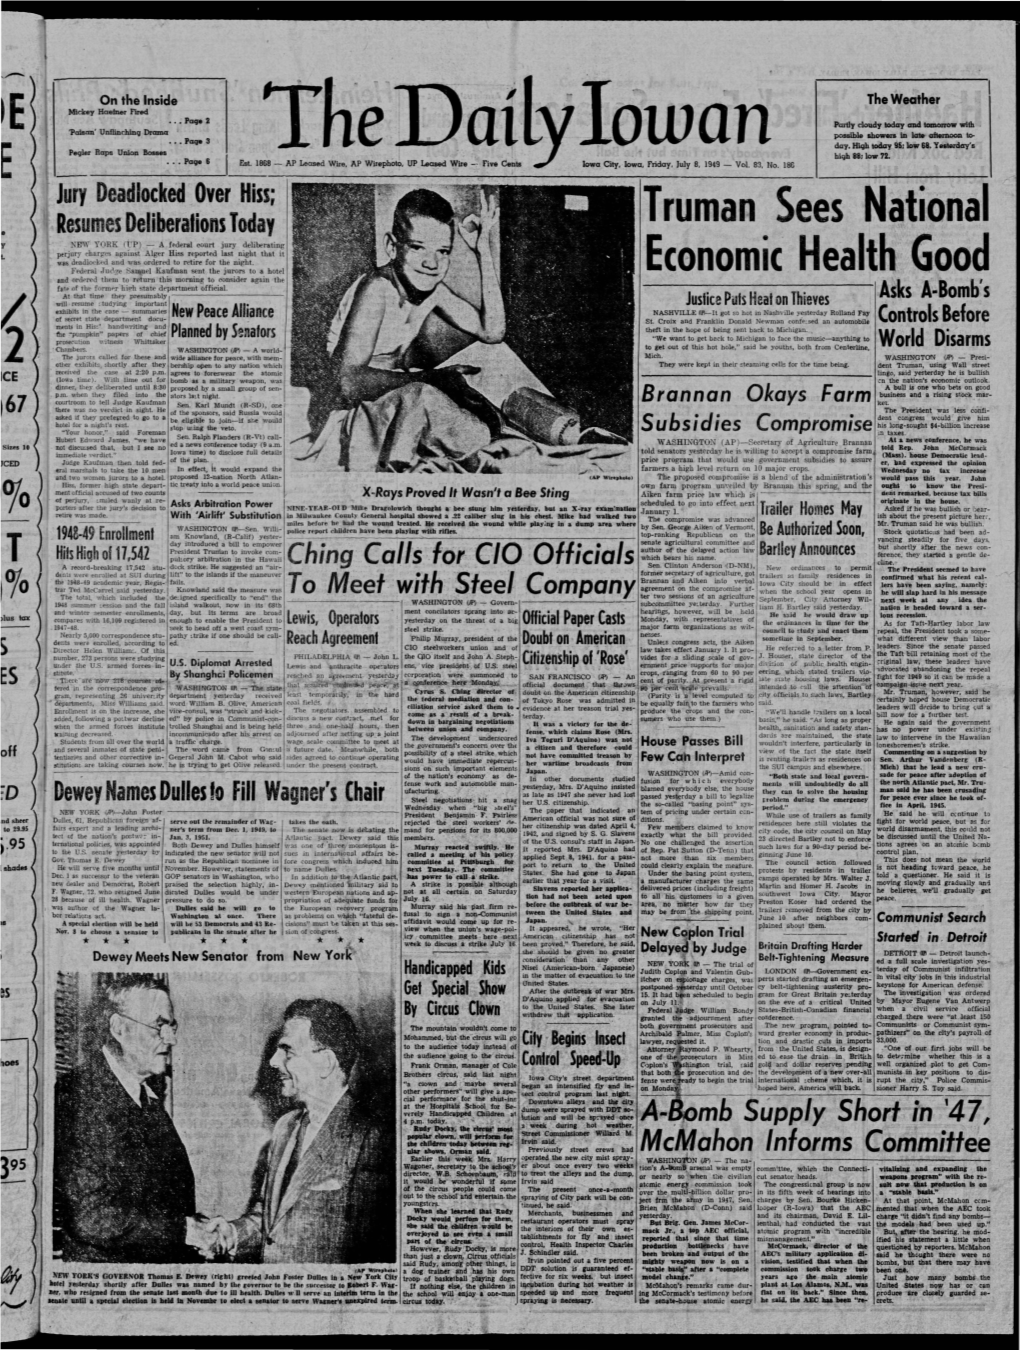 Daily Iowan (Iowa City, Iowa), 1949-07-08